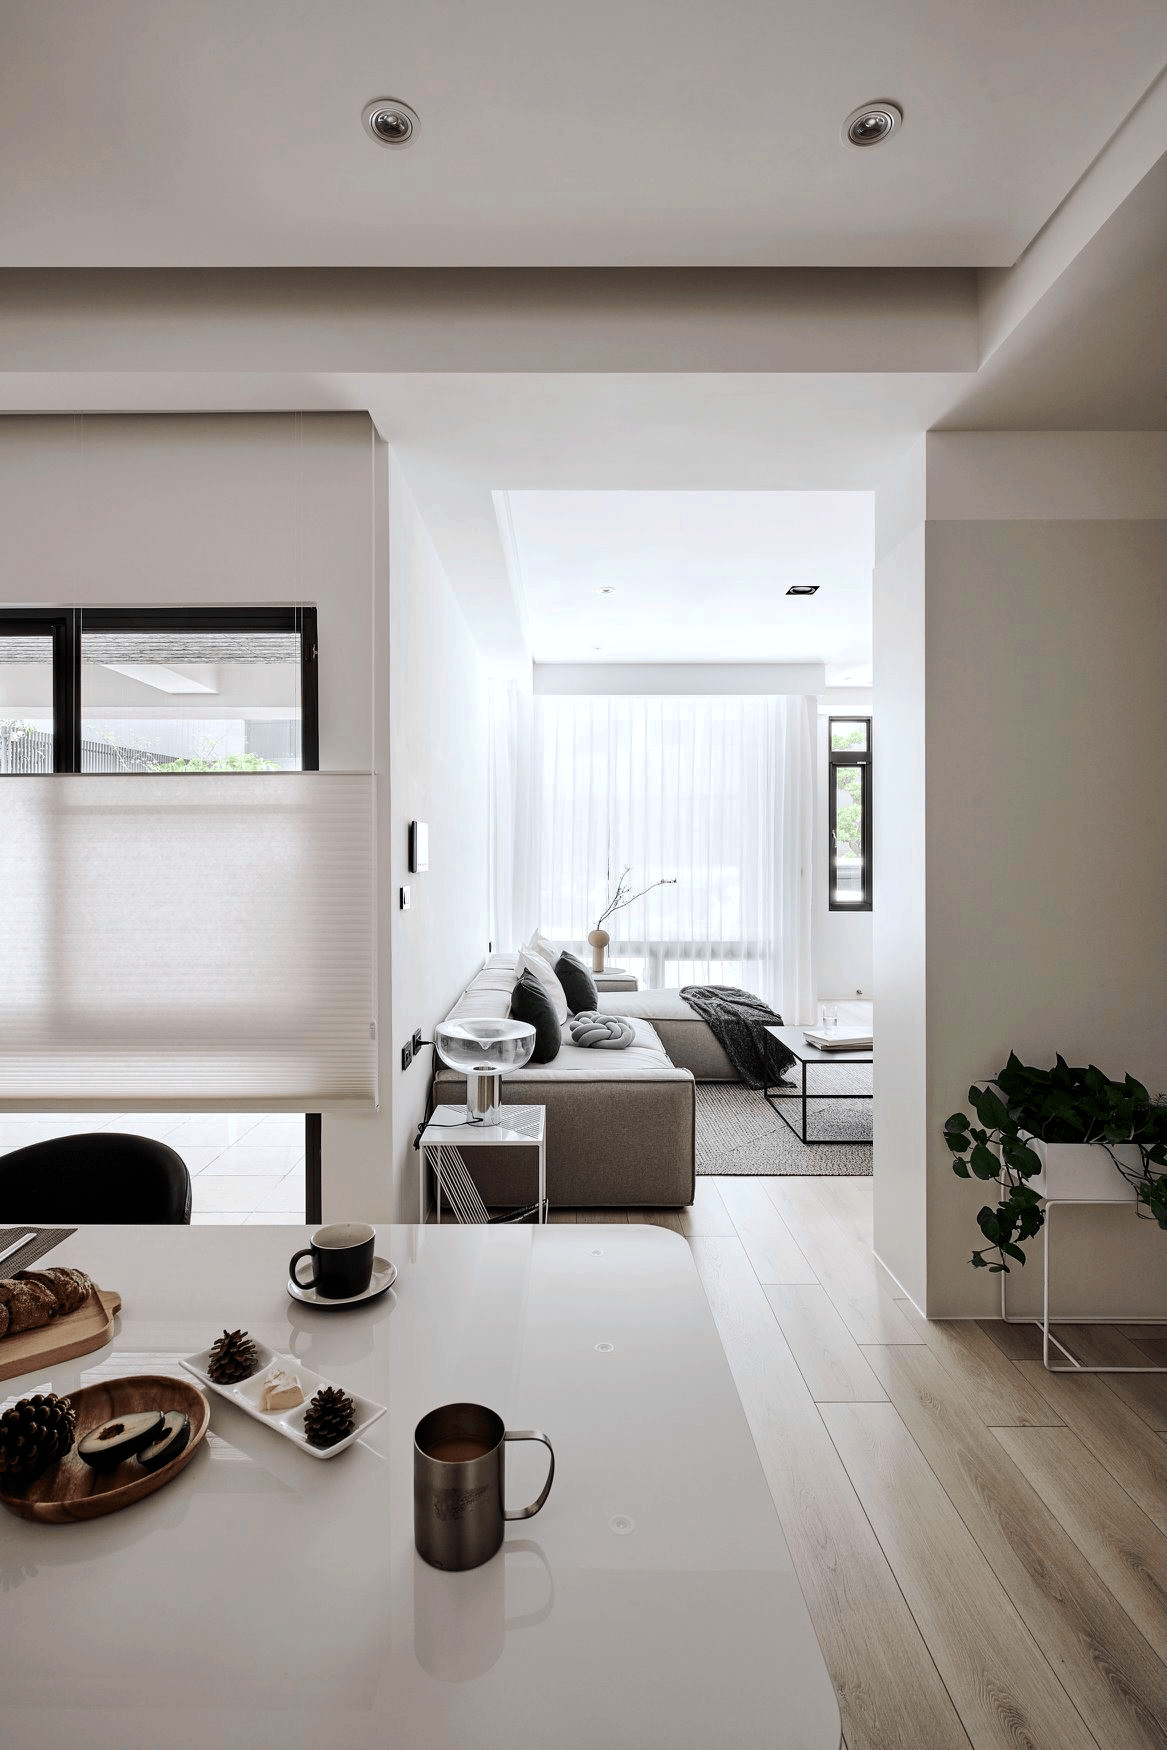 他家现代极简风格,坚持只刷白墙,室内干净洁白,简单又